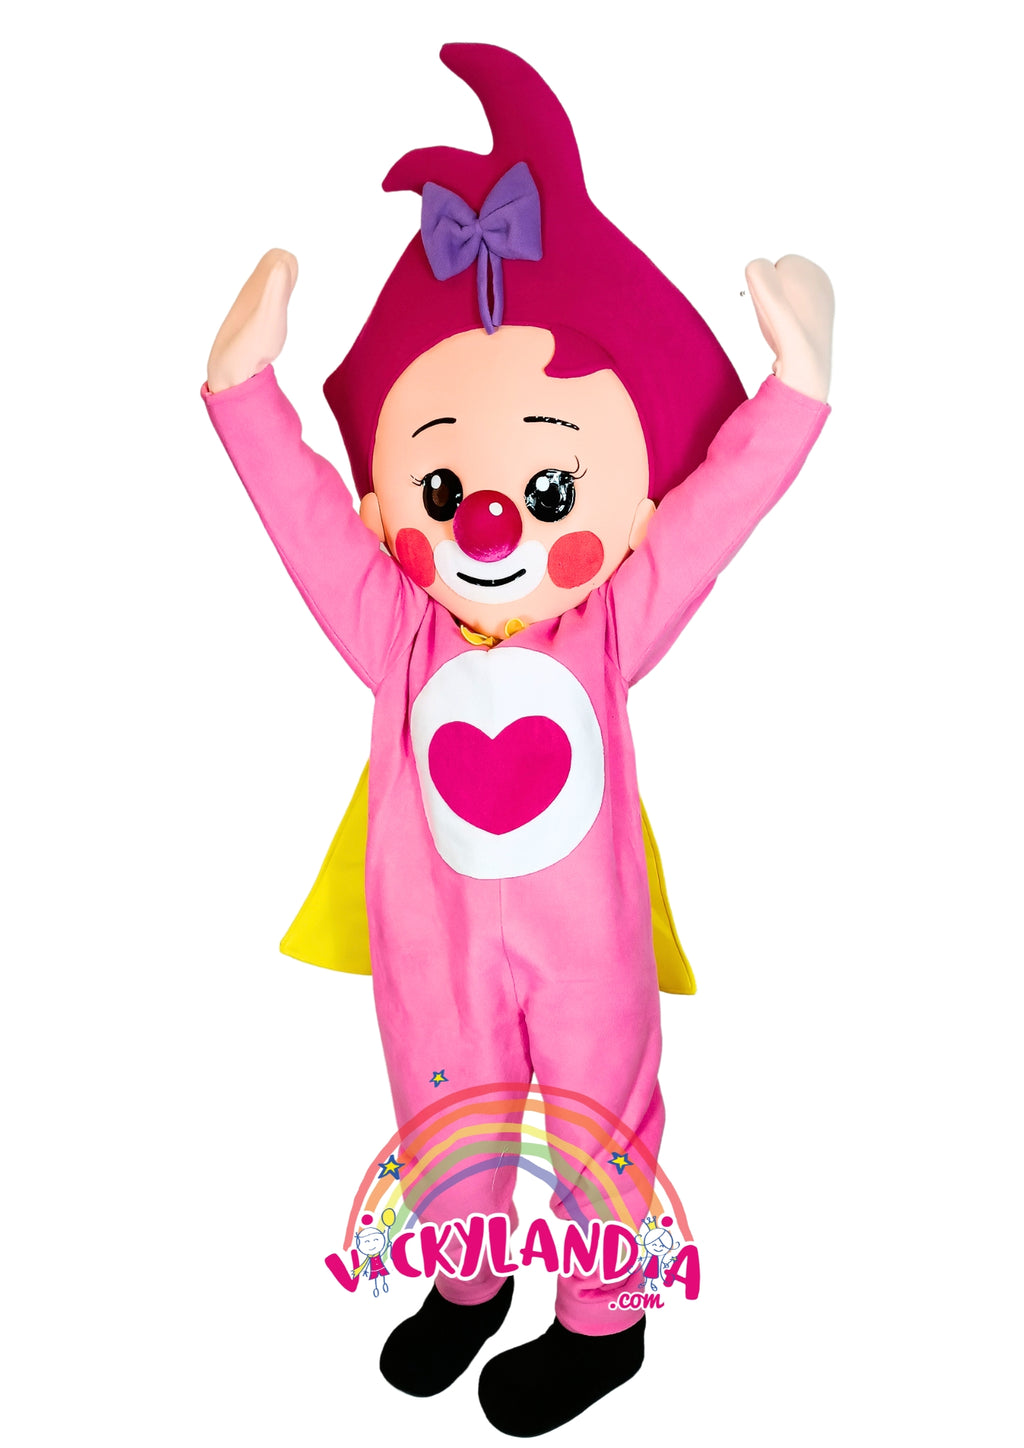 Descubre la magia de nuestro muñeco publicitario de Niña Payasa Heroína en Vickylandia. Son disfraces cabezones perfectos para fiestas infantiles, shows, cumpleaños, estrategias publicitarias, carnavales, fiestas patronales, espectáculos, cabalgatas y cualquier tipo de evento.